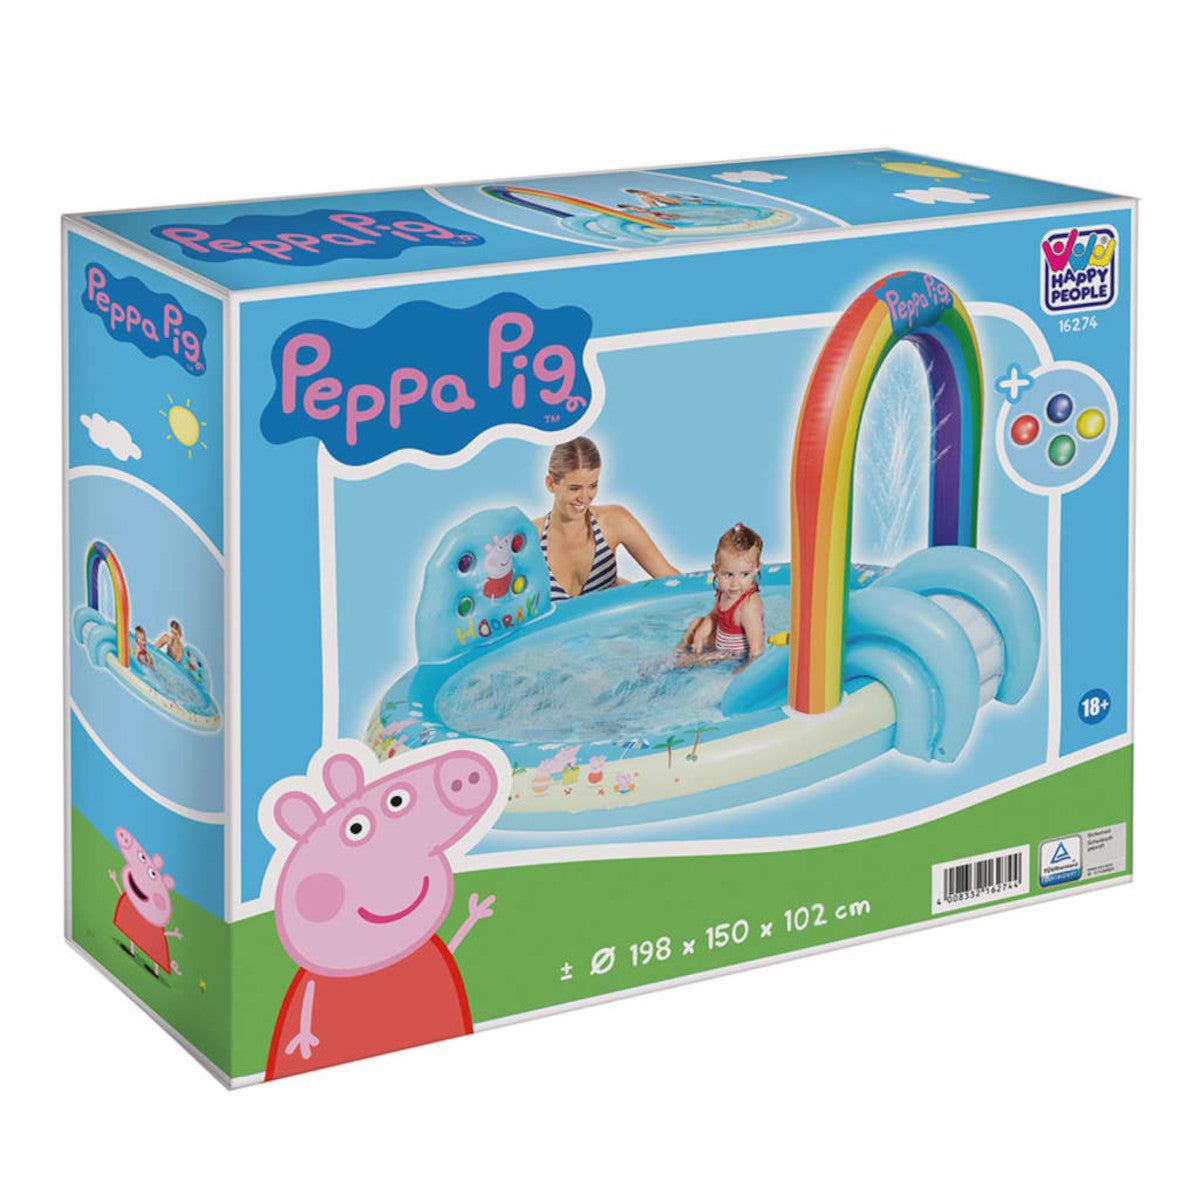 Happy People - Playpool - Peppa Wutz (198x150x102cm)